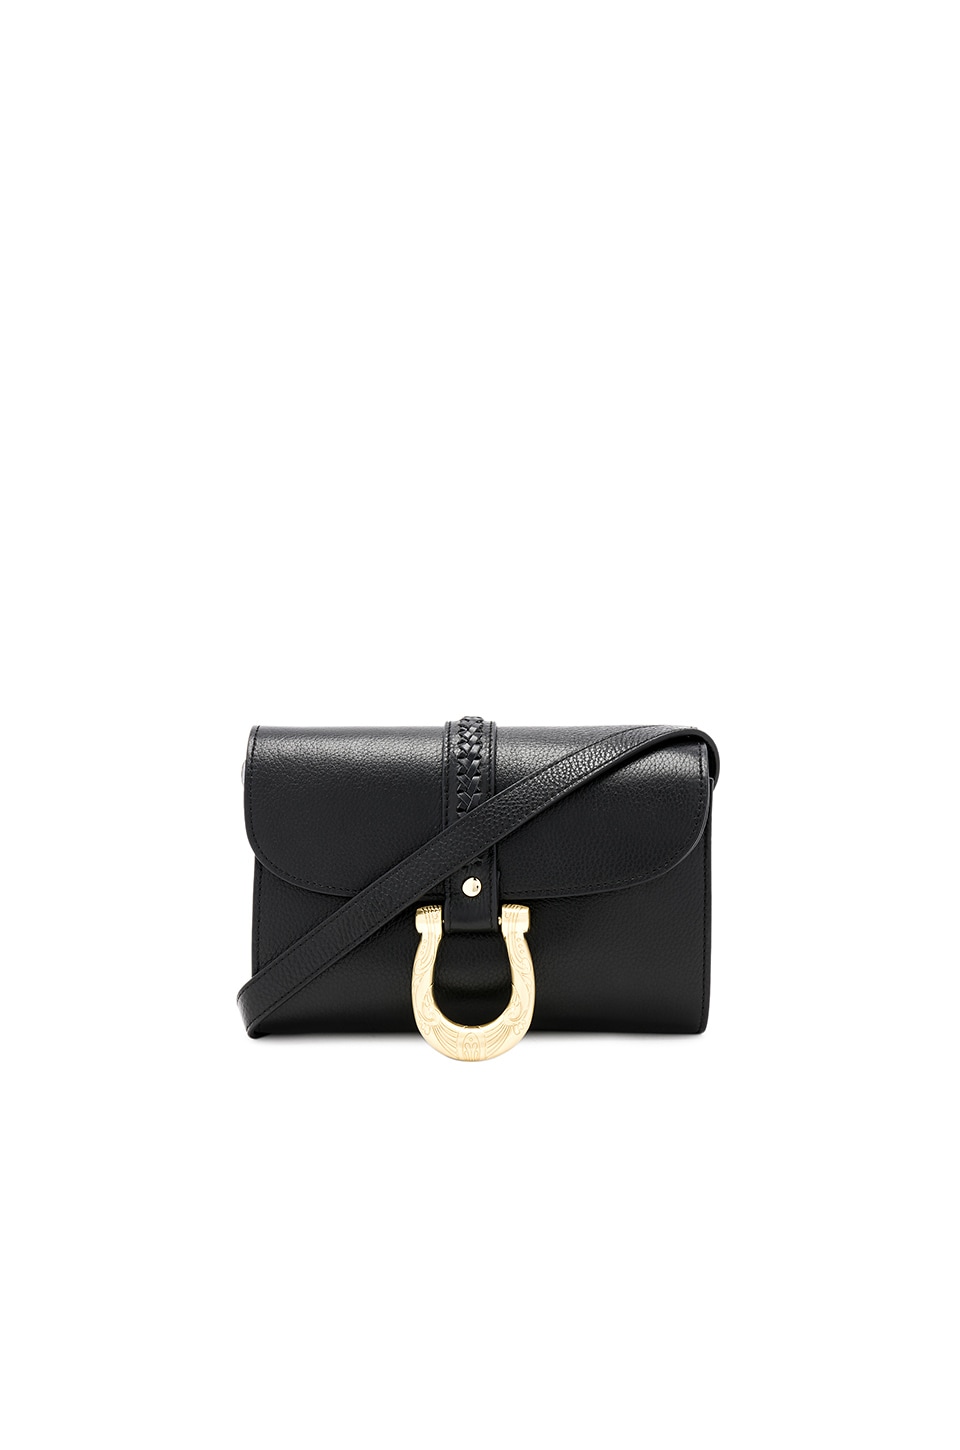 Sancia Maela Mini Bag in Black | REVOLVE